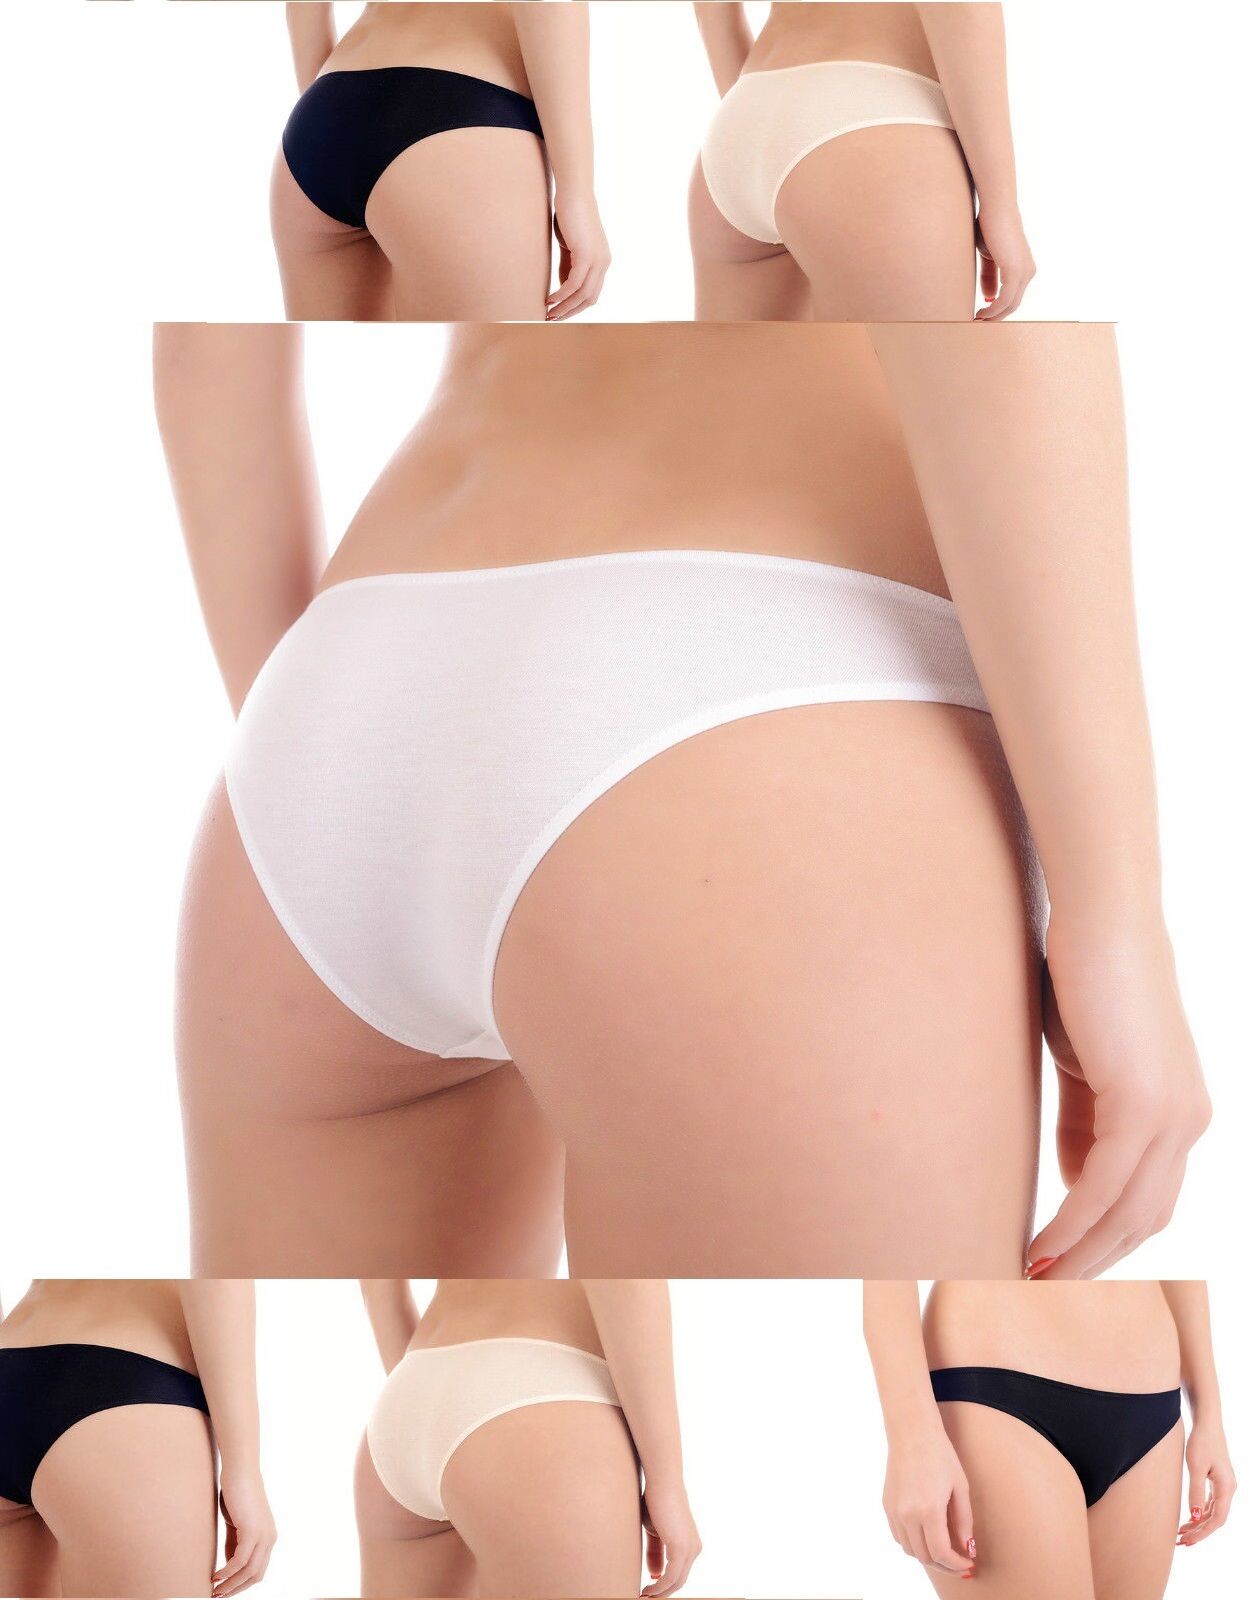 Bamboo Organic Women Ladies Girls Underwear Panties Black White Nude Size S  M L 